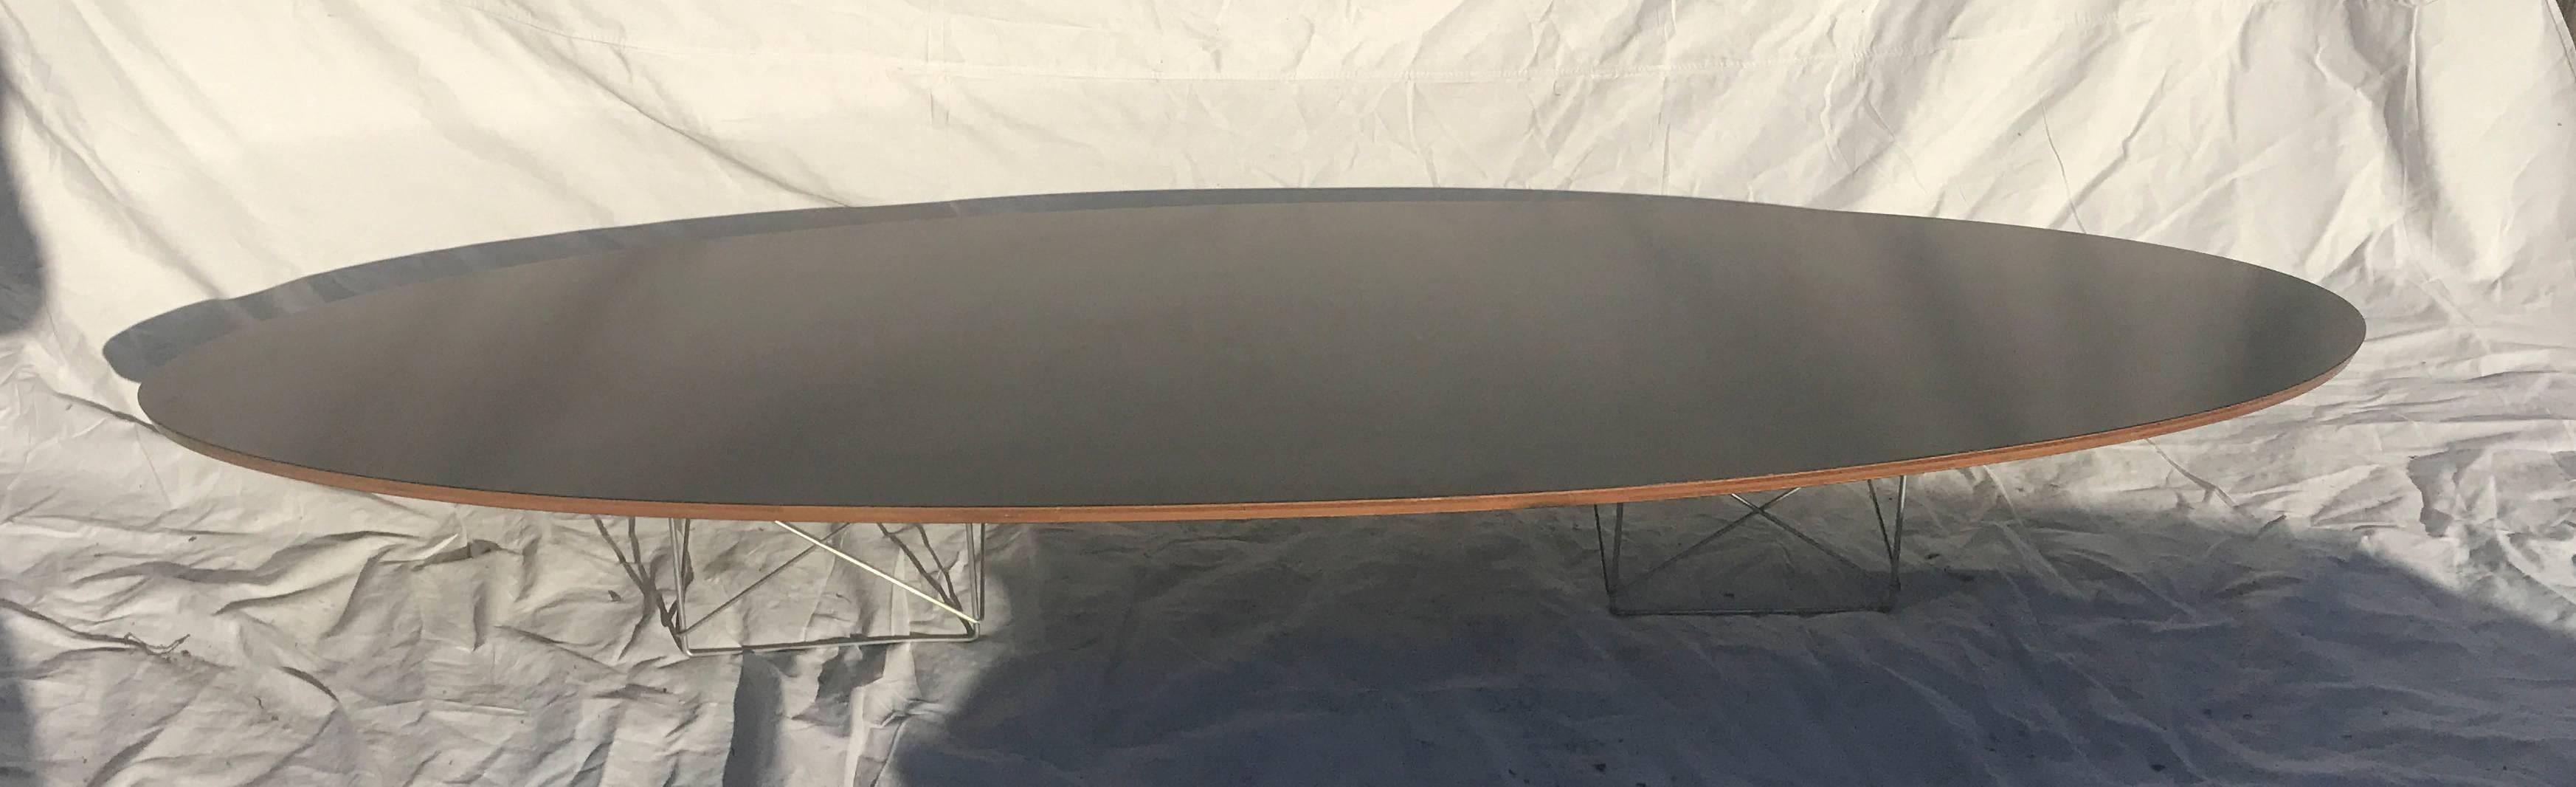 Elliptical Table Rod (ETR) - Original Eames Elliptical Table with Rod base often referred to as the Surfboard table due to its elongated shape and low profile. Elle utilise deux des bases en fil de fer conçues pour les tables LTR, qui supportent un